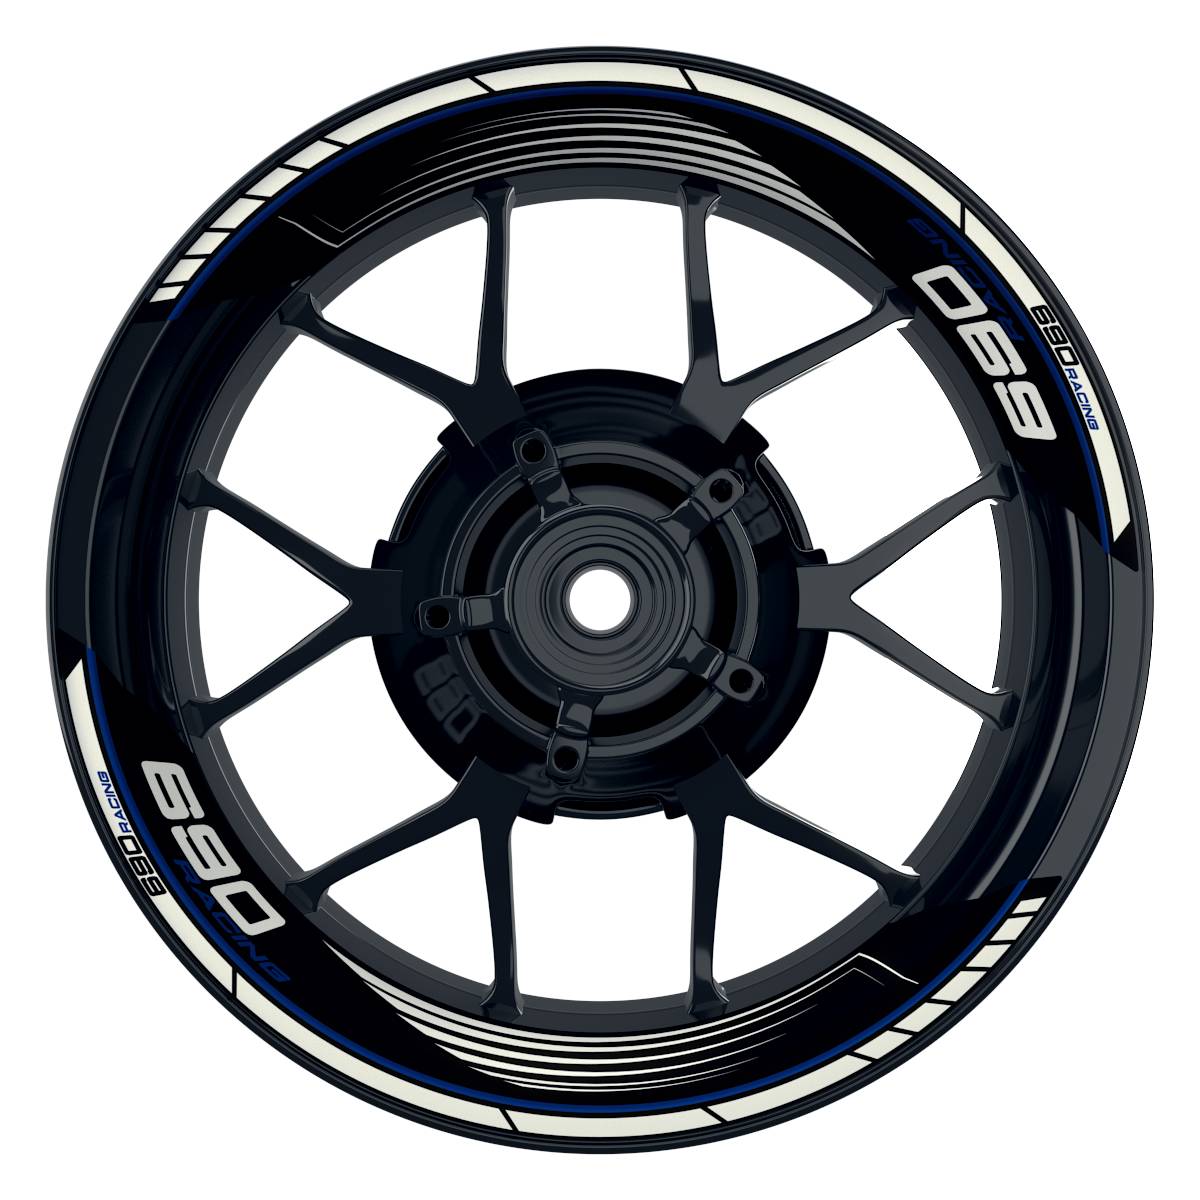 KTM Racing 690 SAW schwarz blau Frontansicht